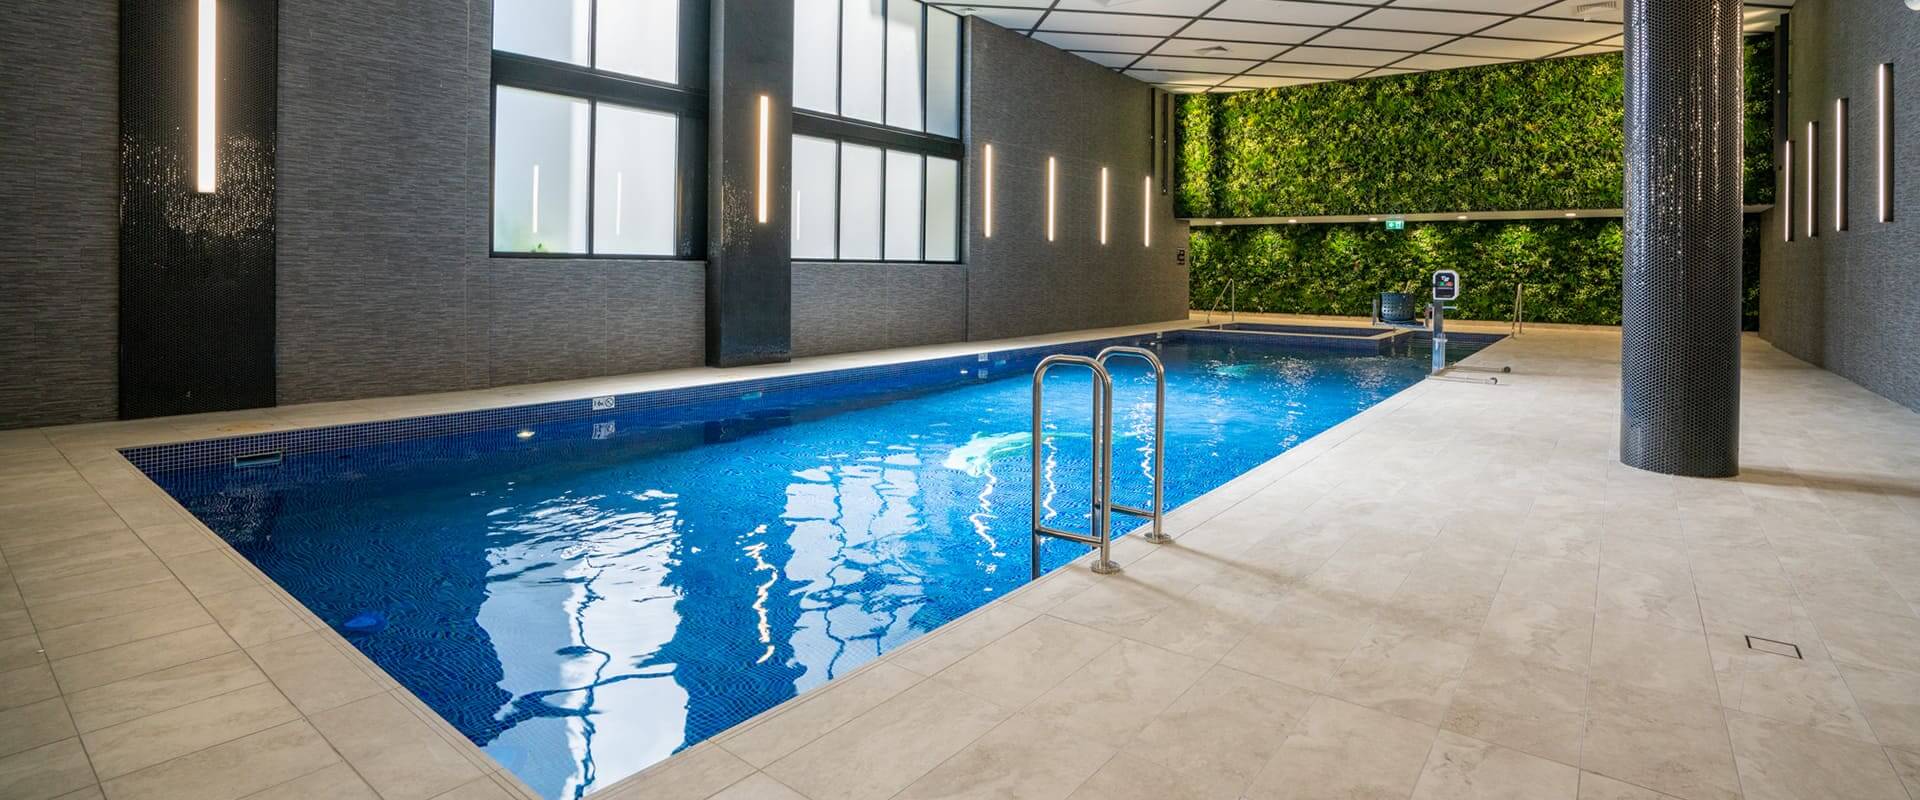 meriton pool green wall